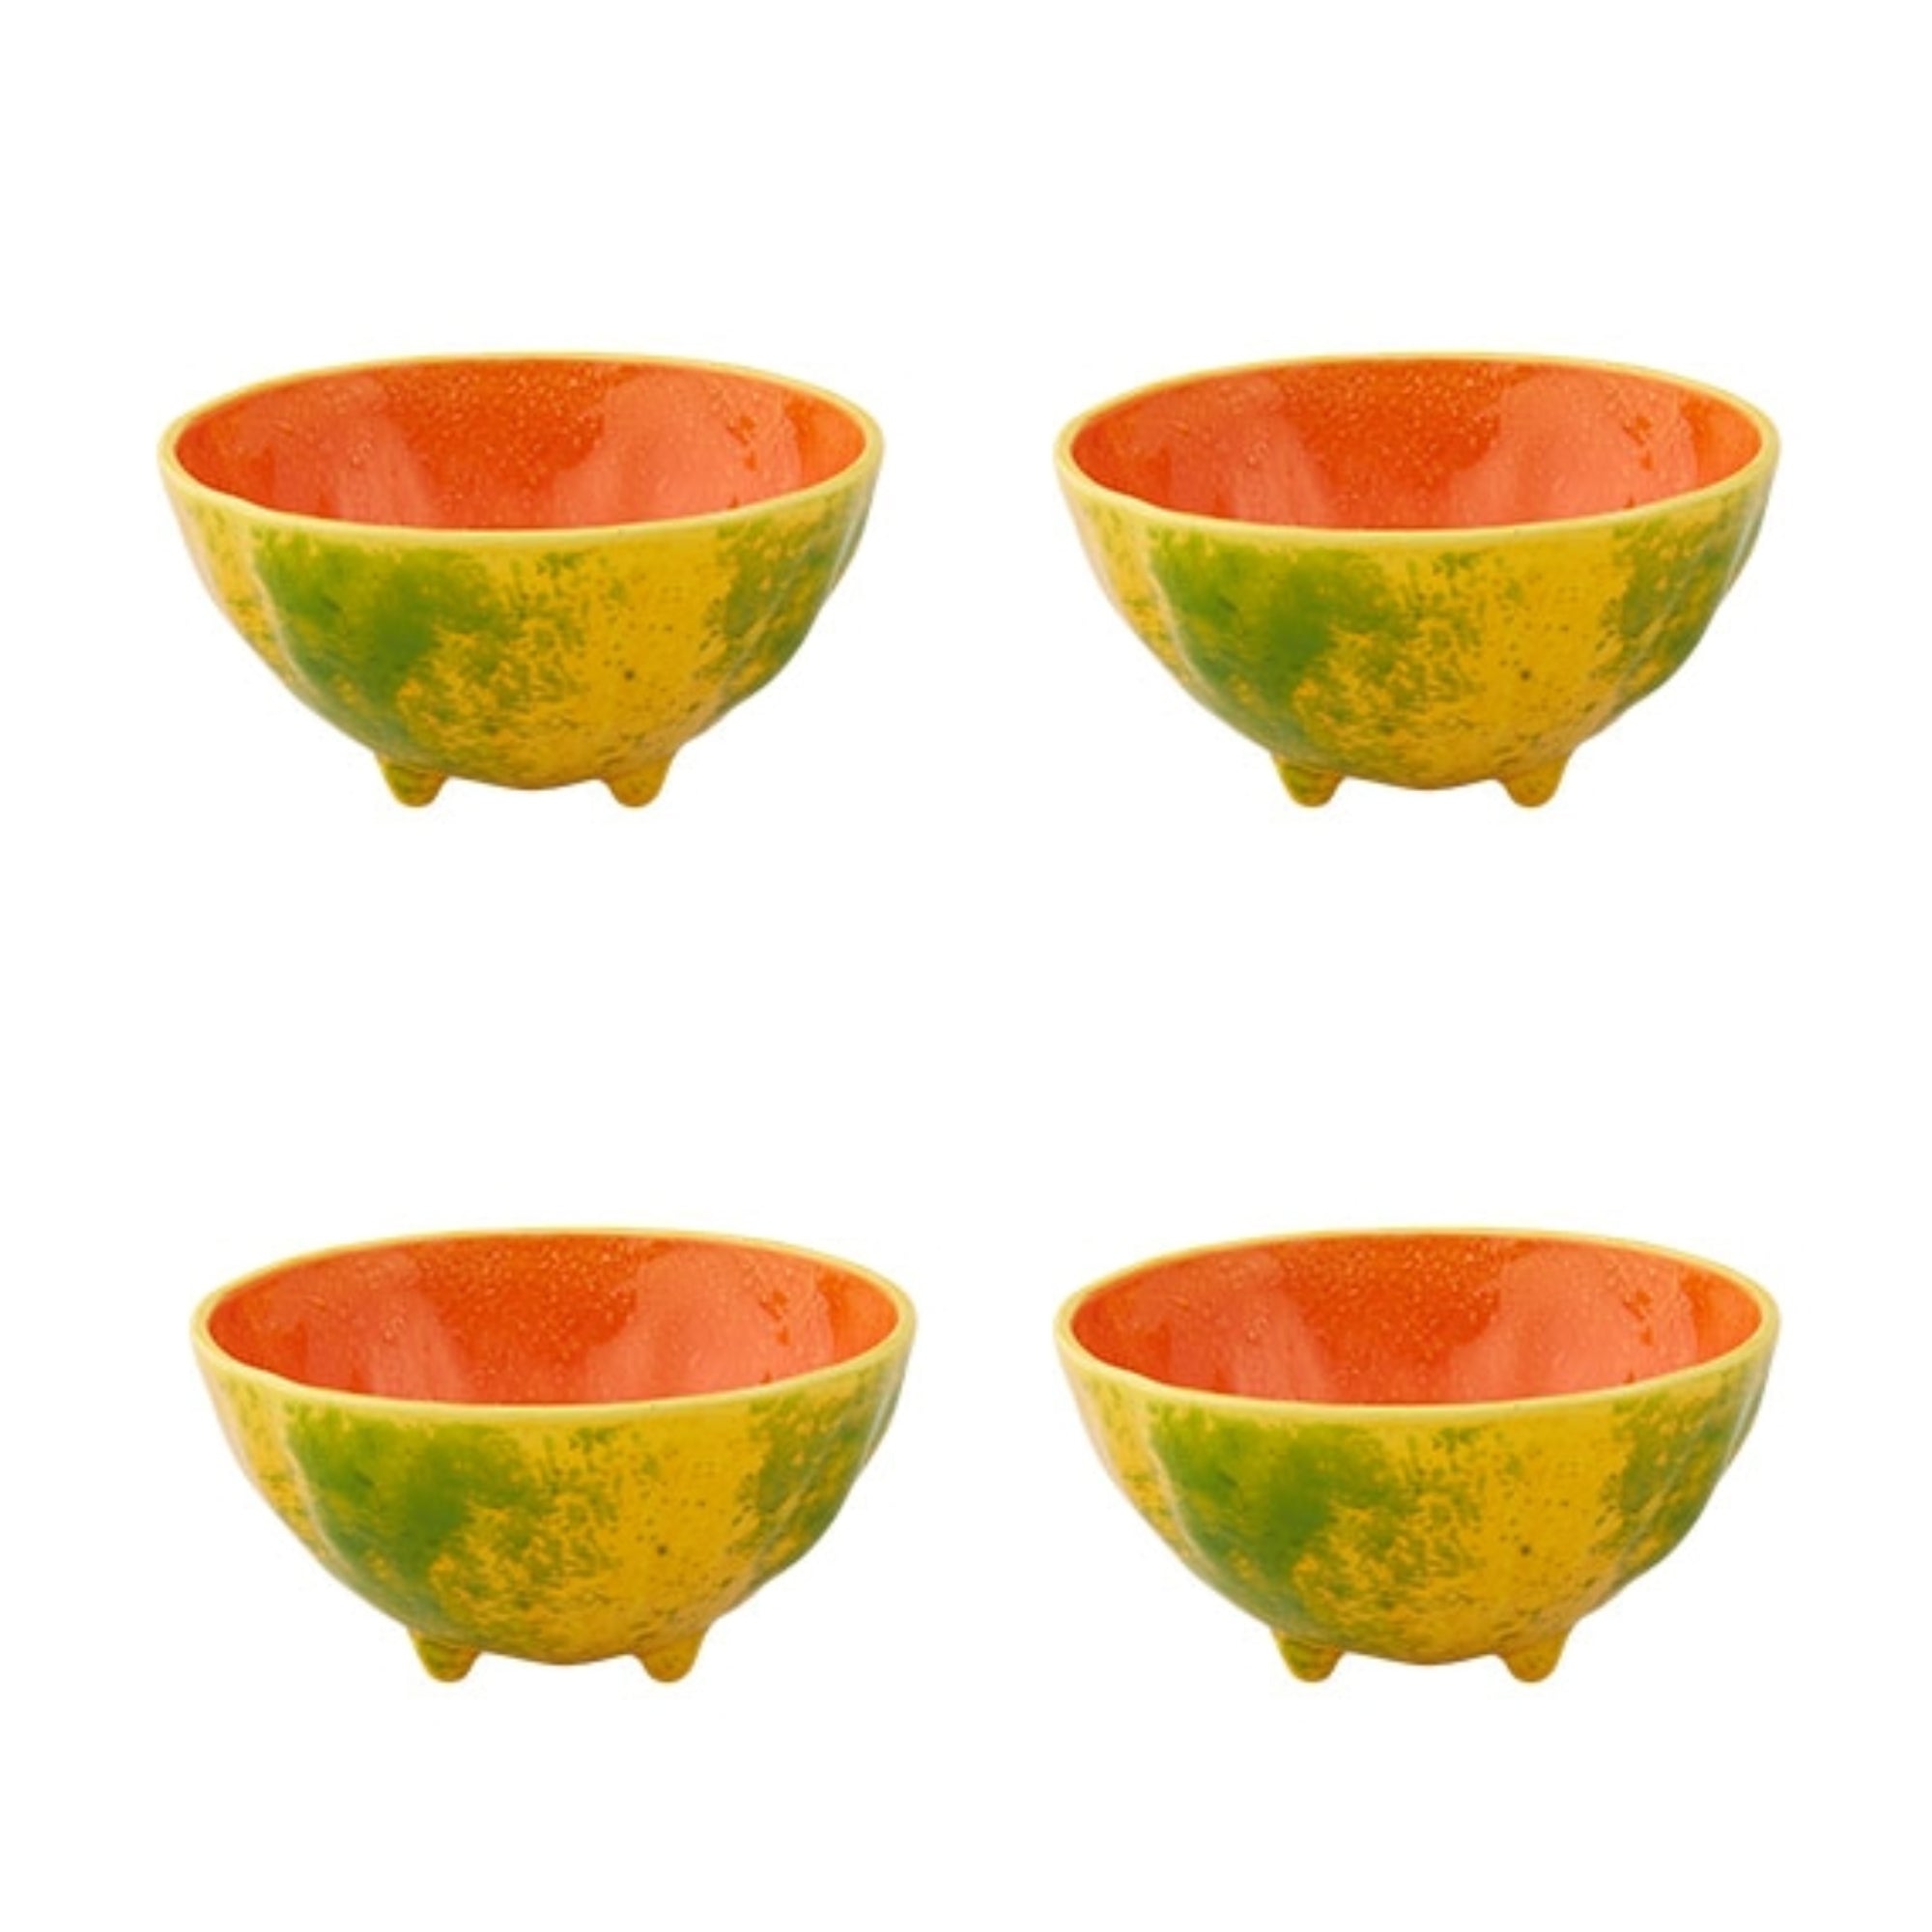 Bordallo Pinheiro Frutos Tropicais Set 4 Tropical Fruit Bowls, 13 cm